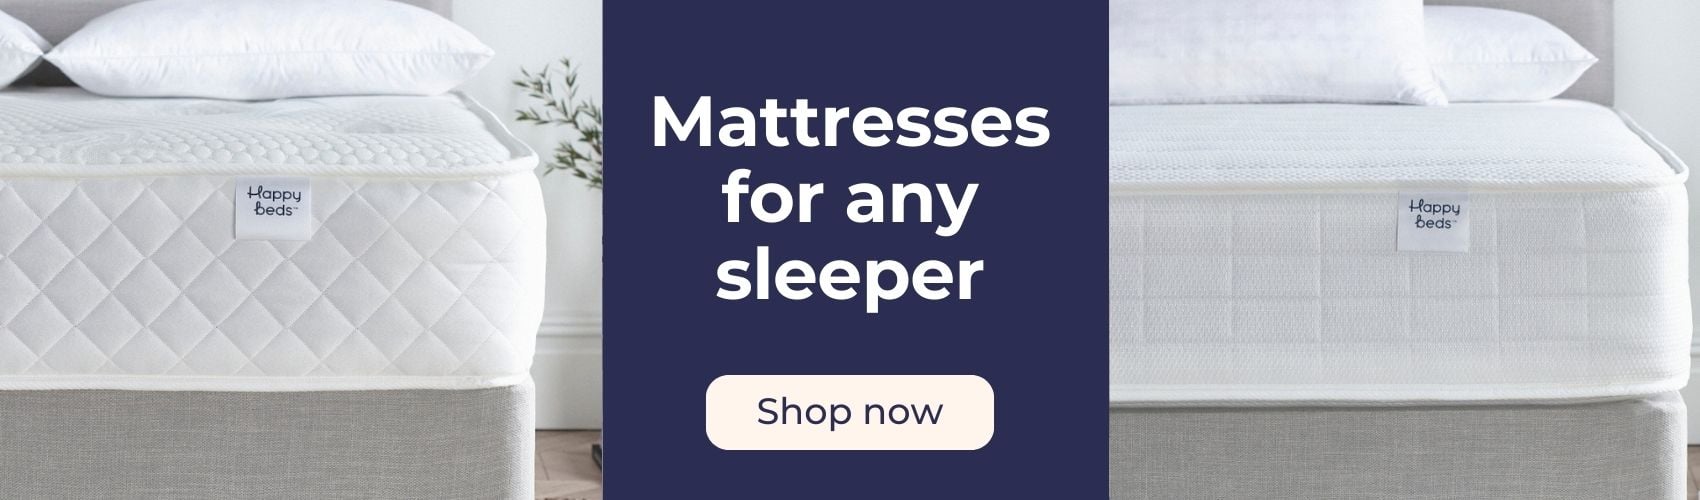 Shop mattresses now